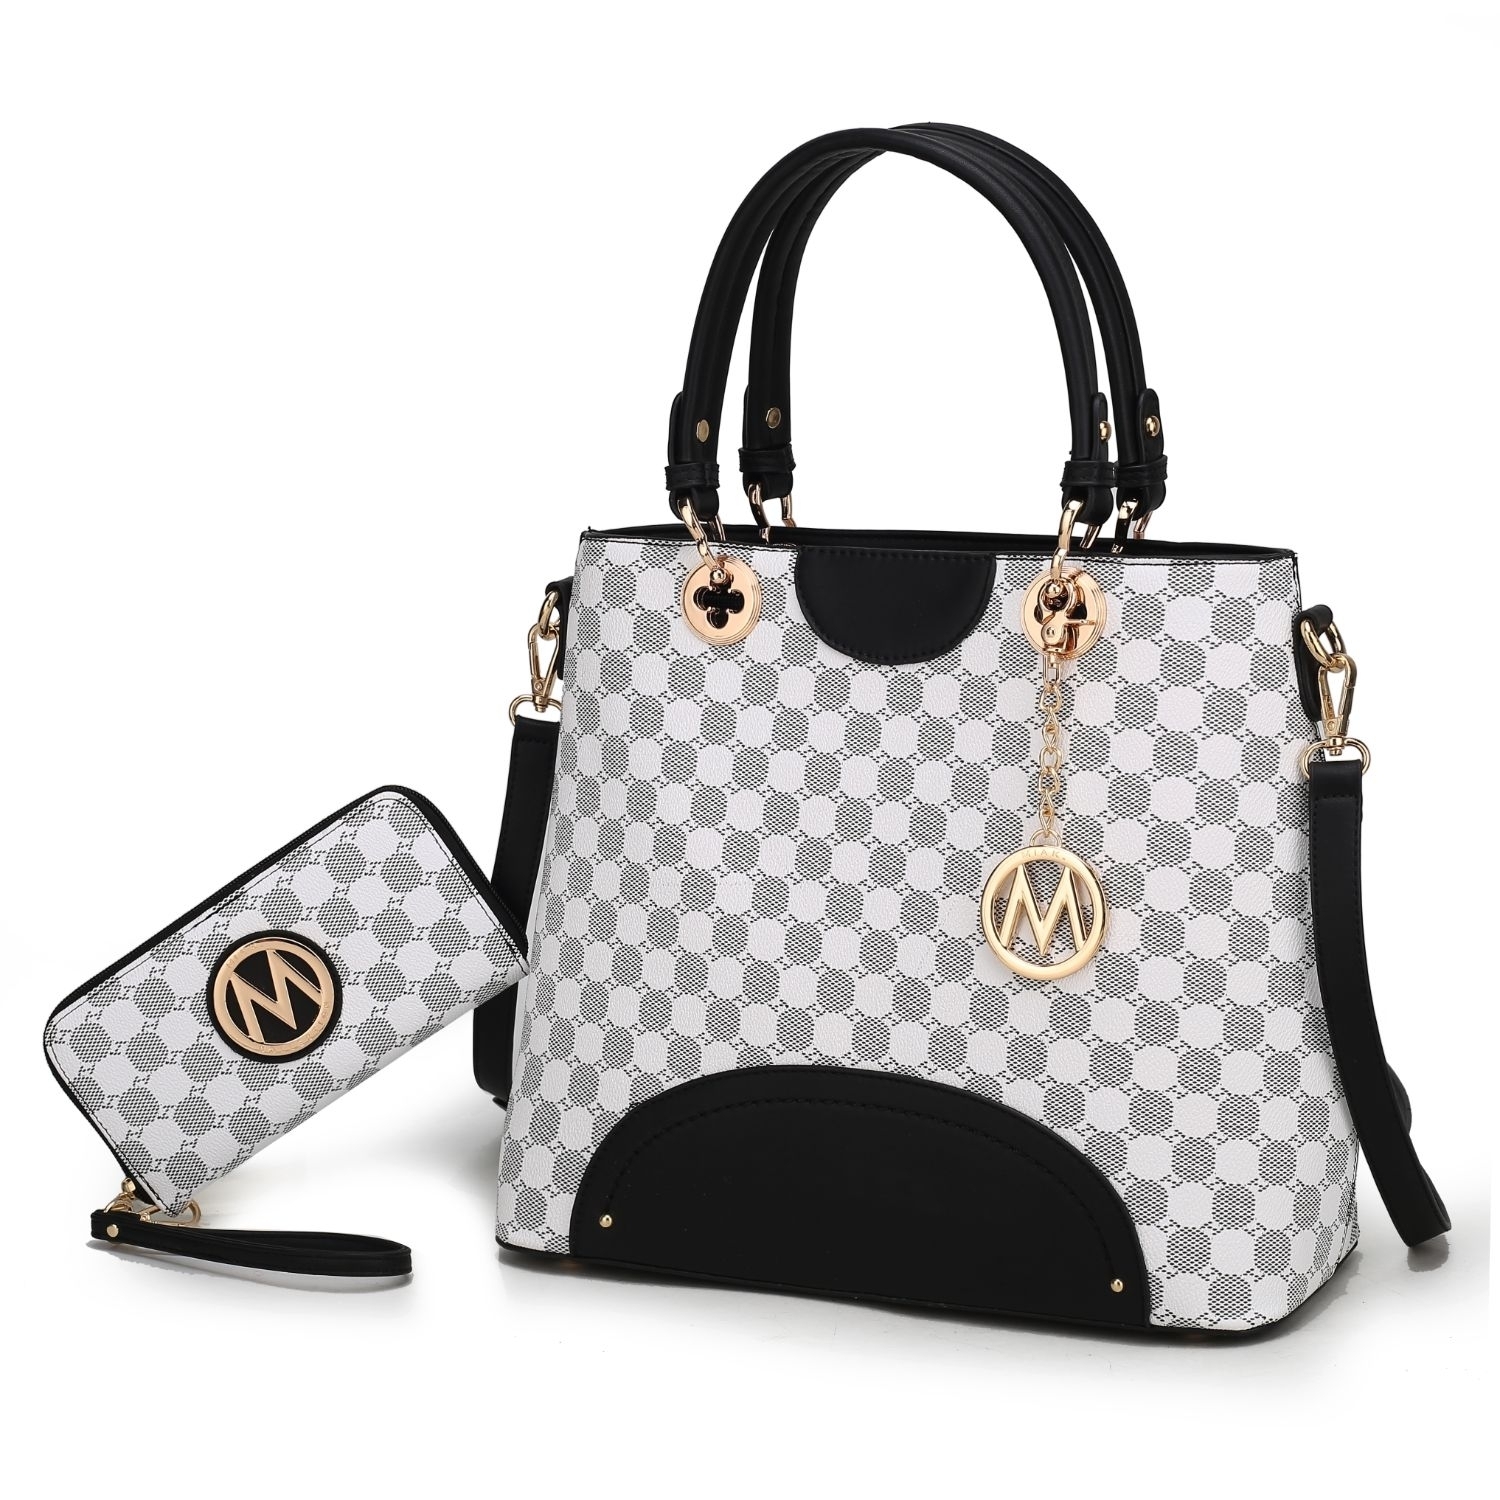 MKF Collection Gabriella Handbag With Wallet By Mia K. - Cognac Brown